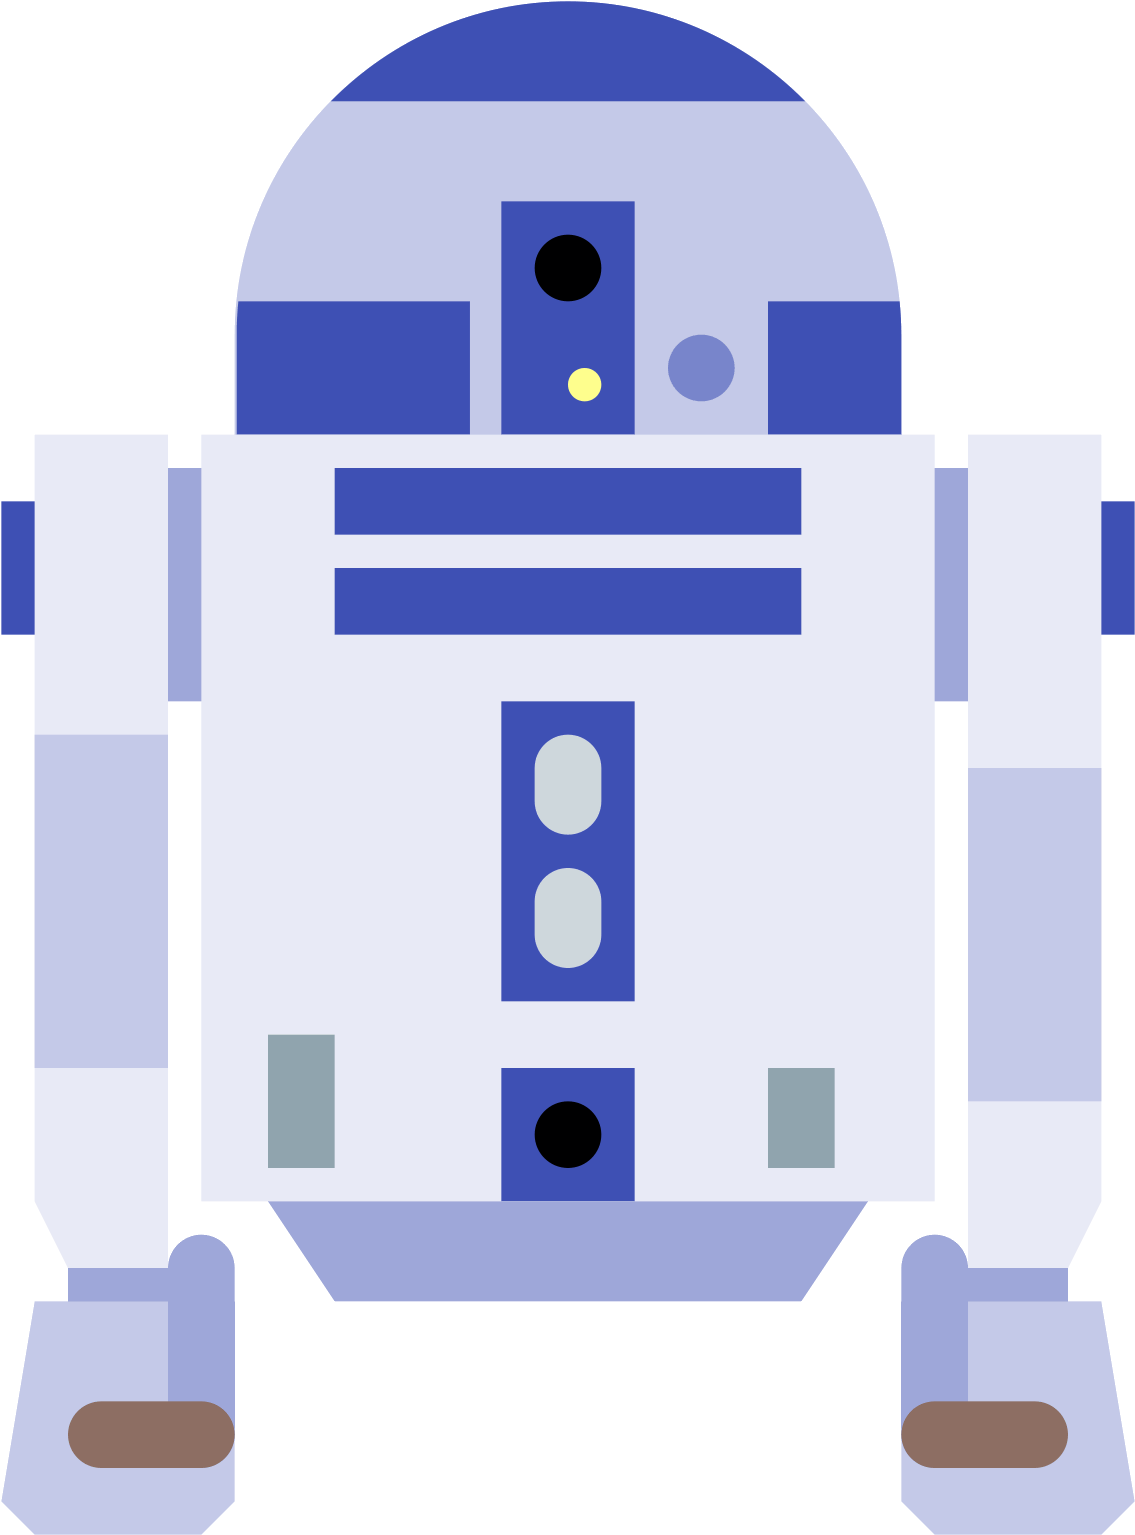 Star Wars R2 D2 PNG Image File